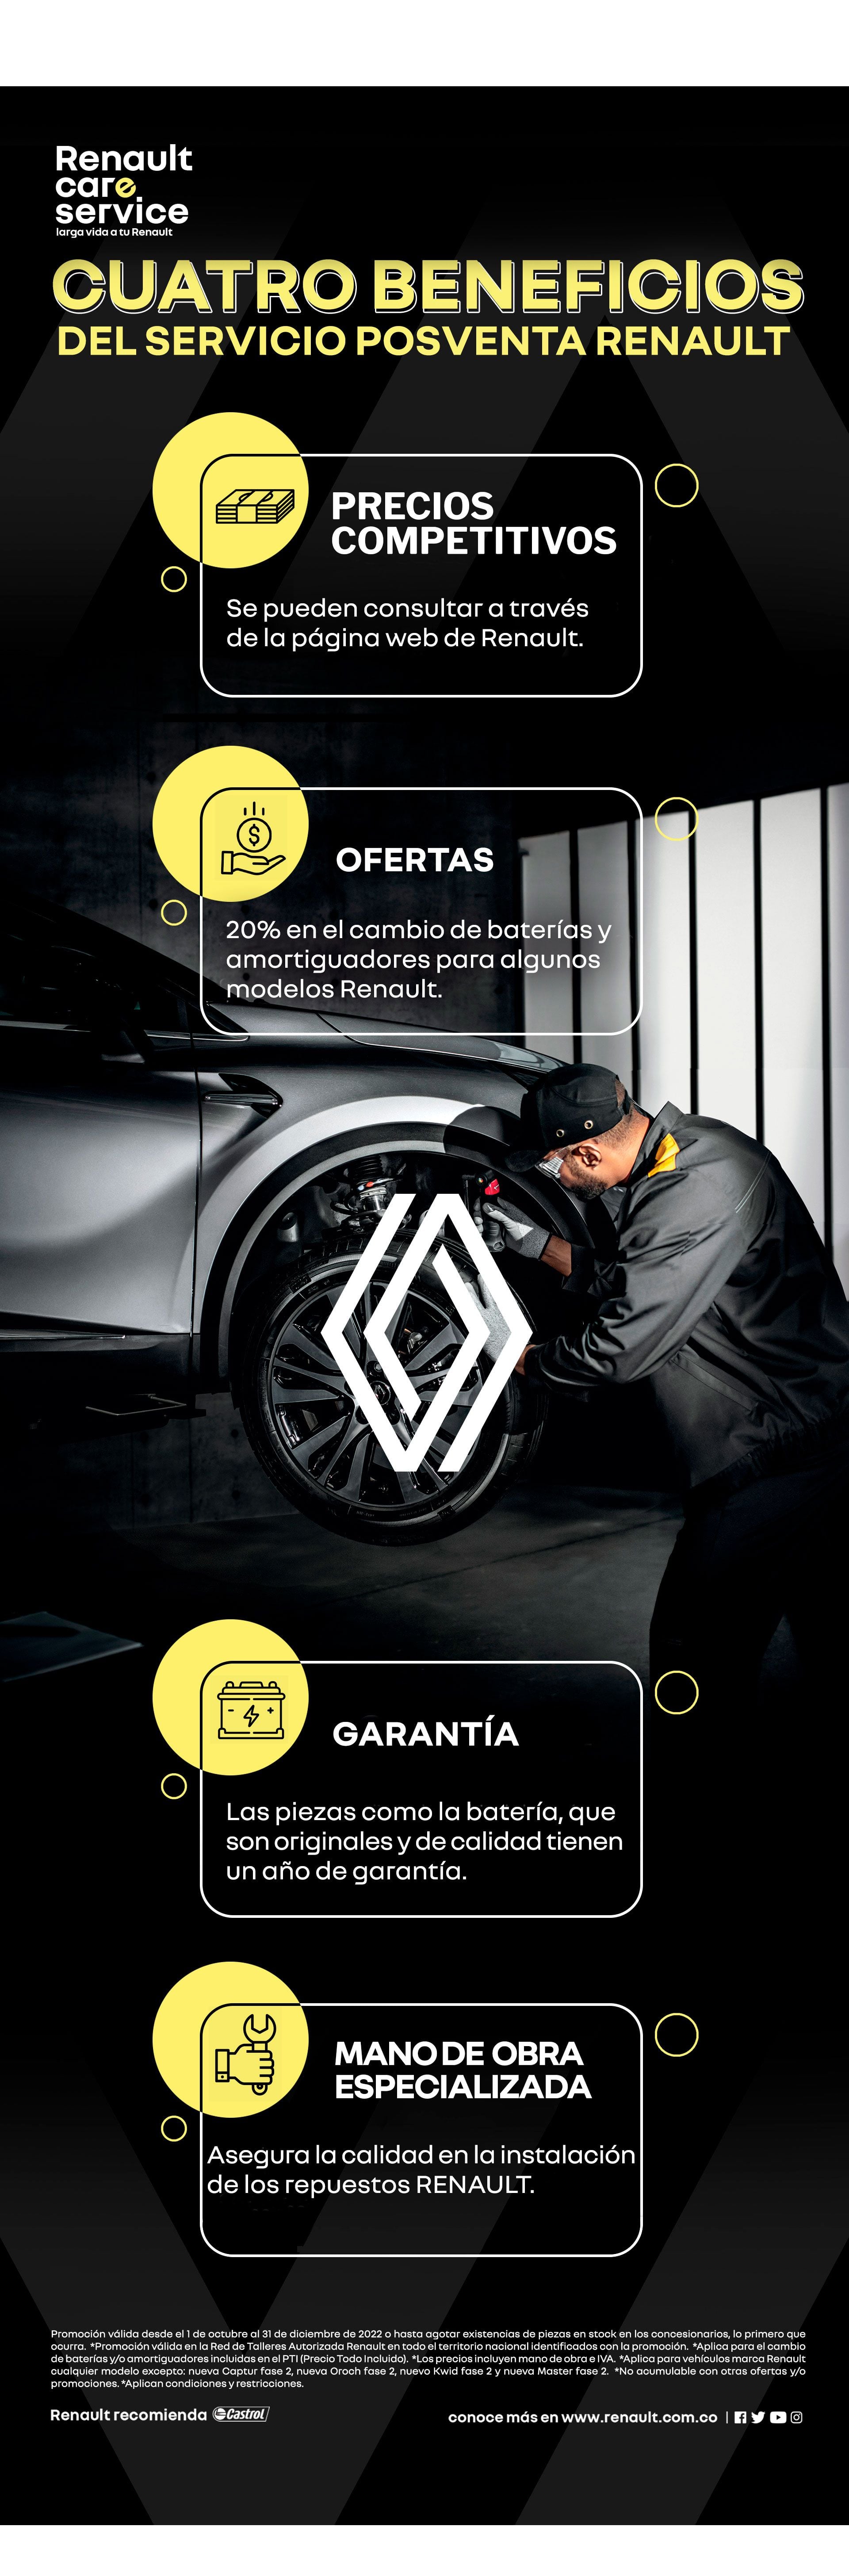 Los beneficios que ofrece Renault en lo que respecta al cambio de baterías son variados.